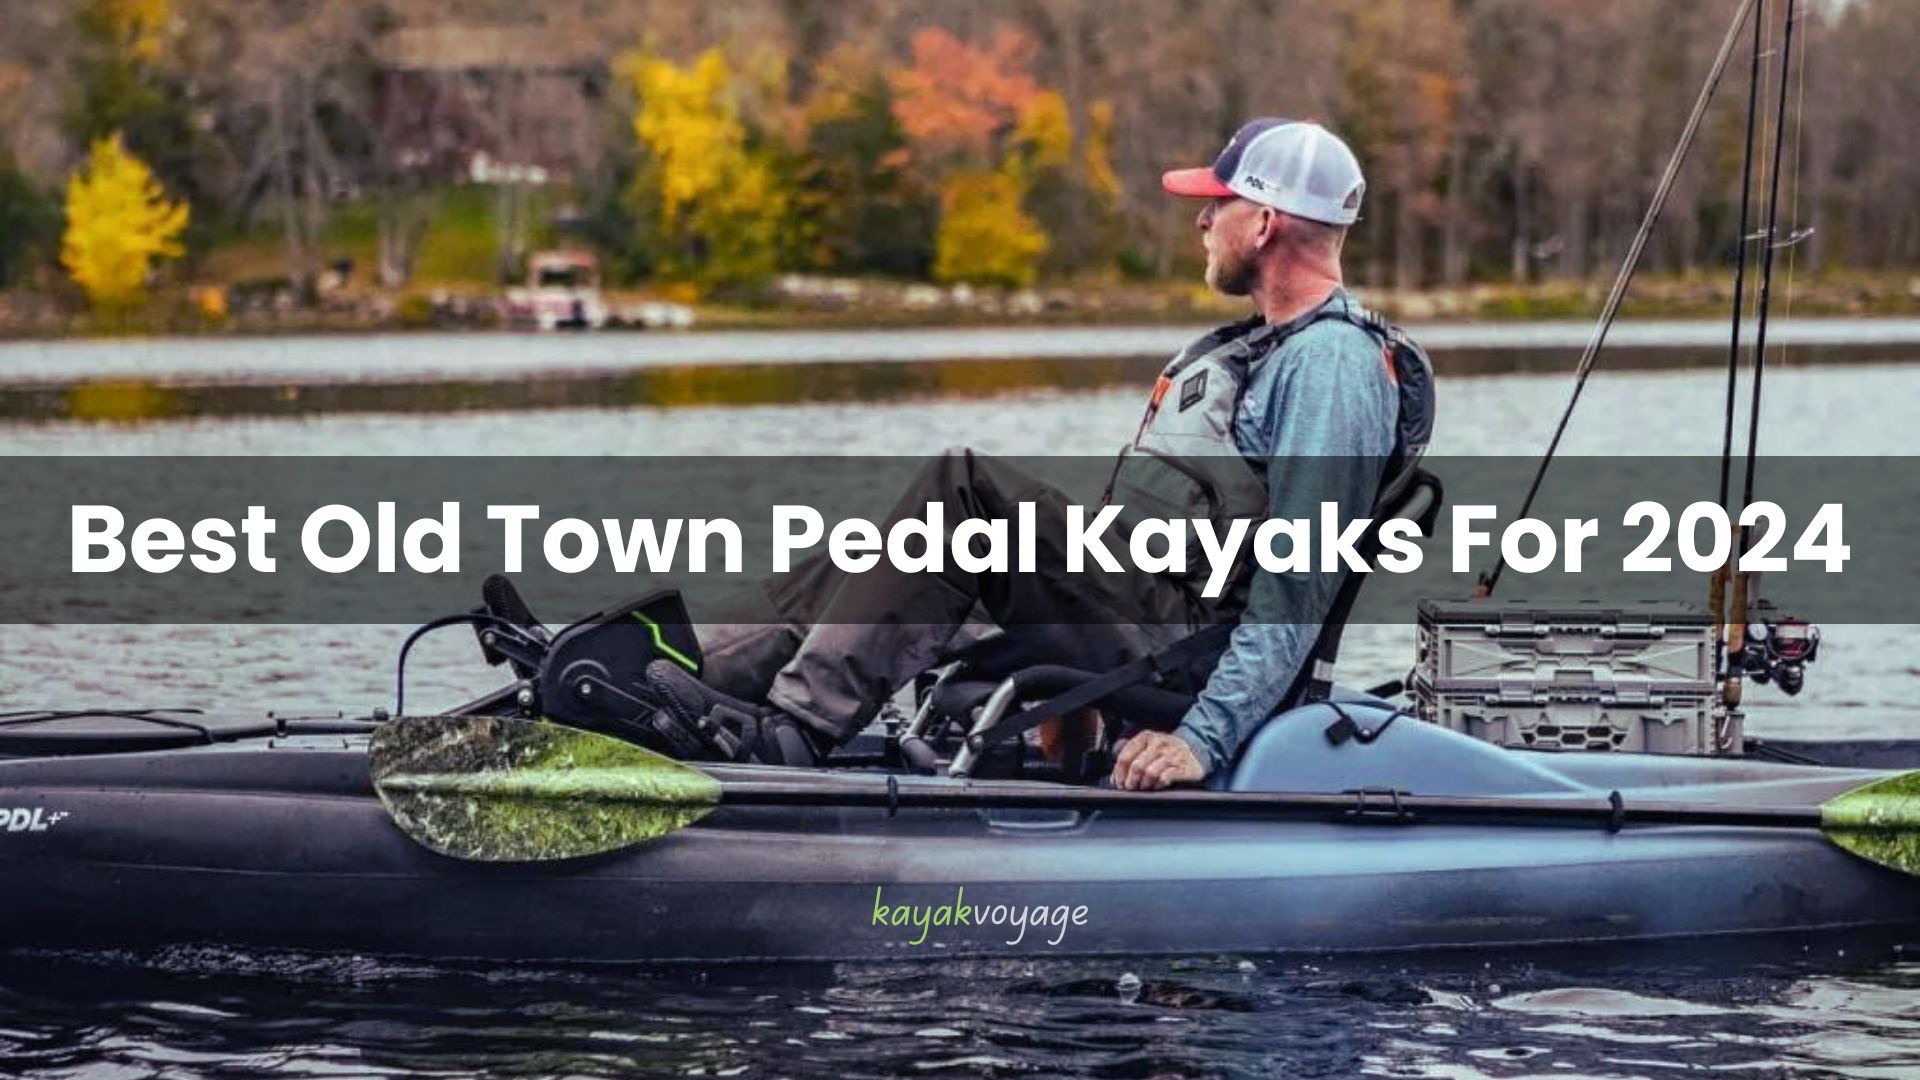 Old Town Pedal Kayaks